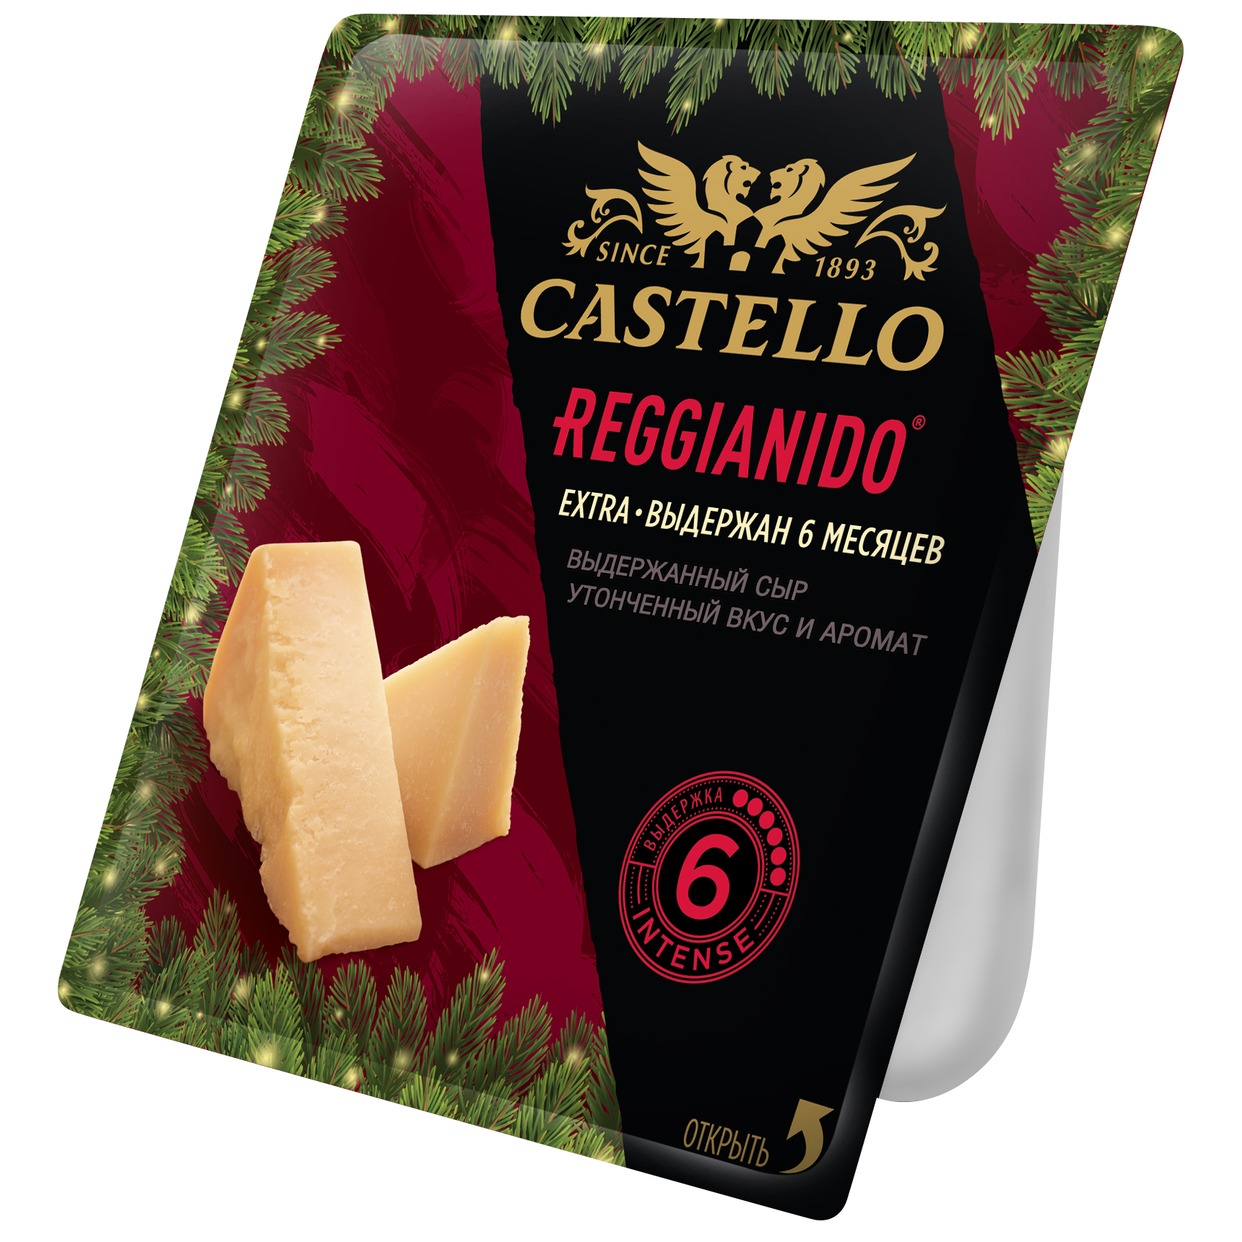 CASTELLO Сыр REGGIANIDO ПАРМЕЗ.33% 150г